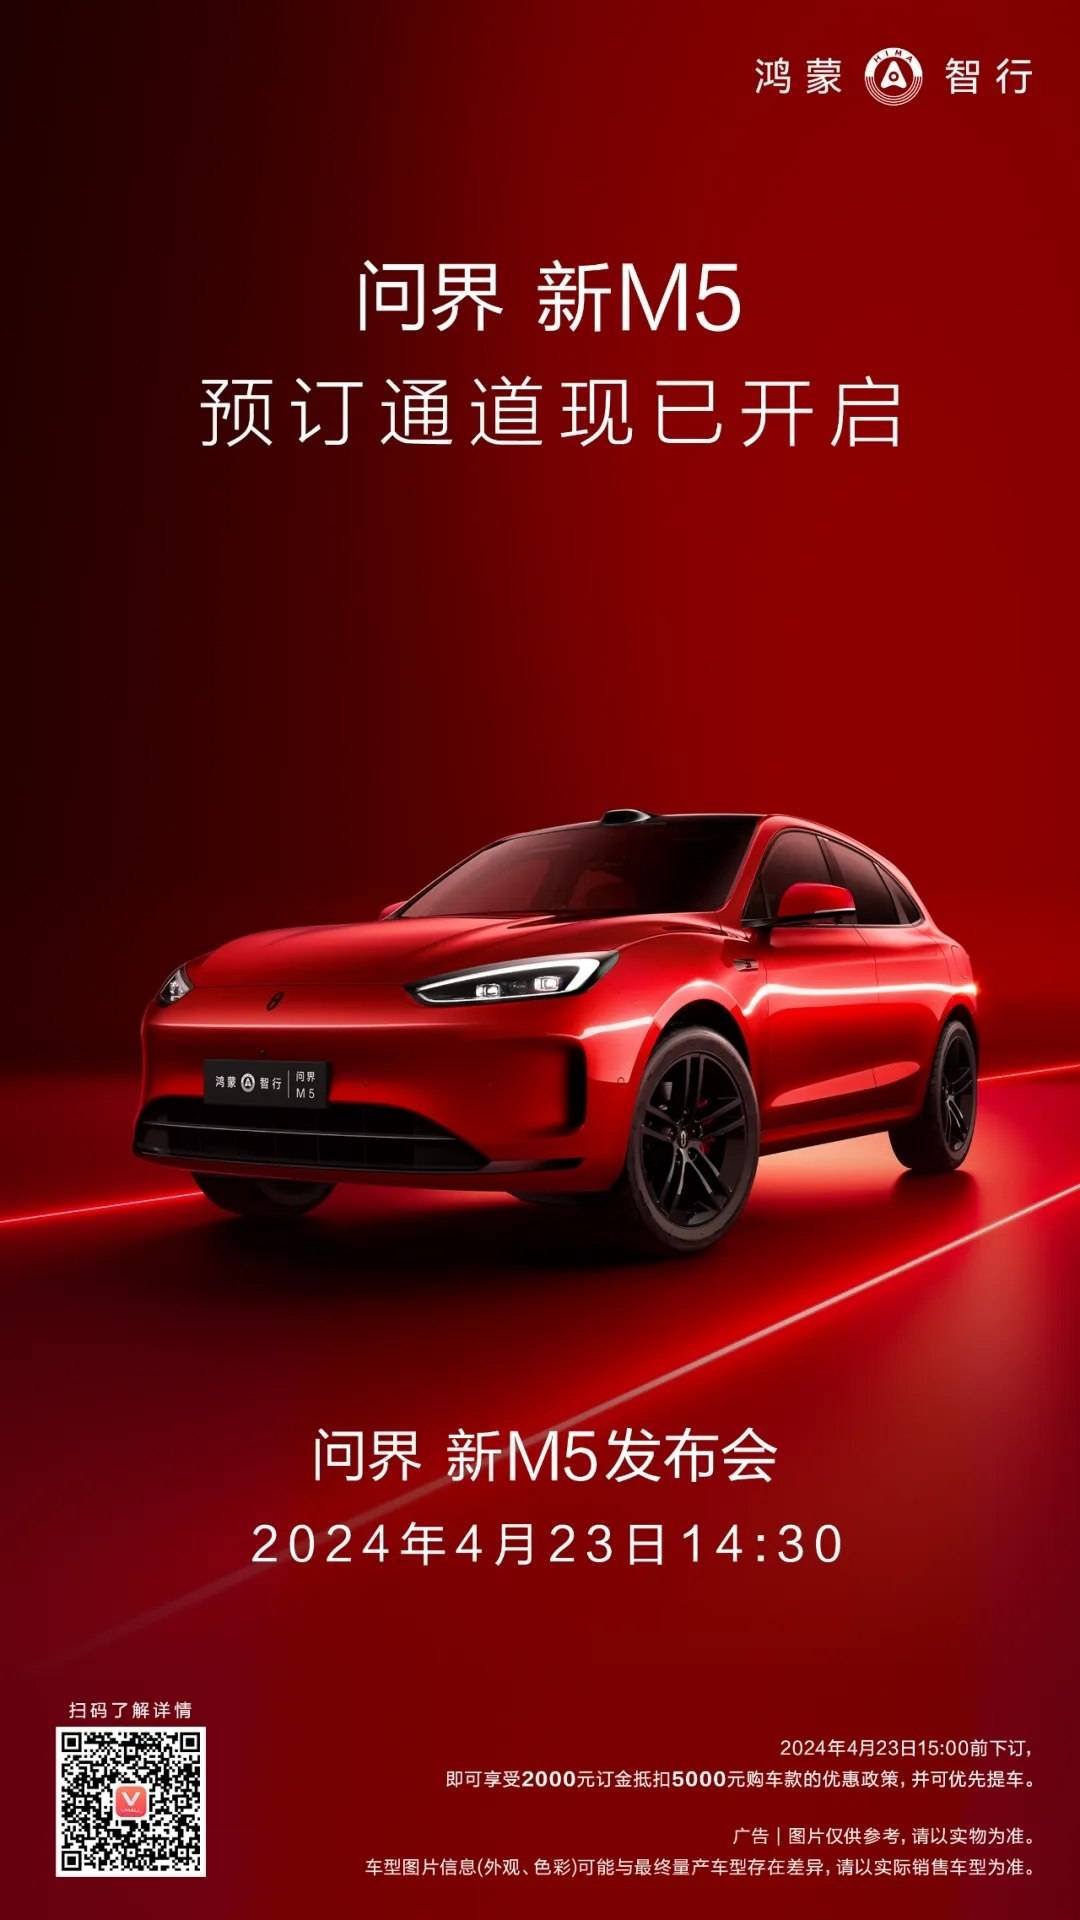 4月23日新车型Sohu.com M5上市，开放预订_搜狐汽车_。